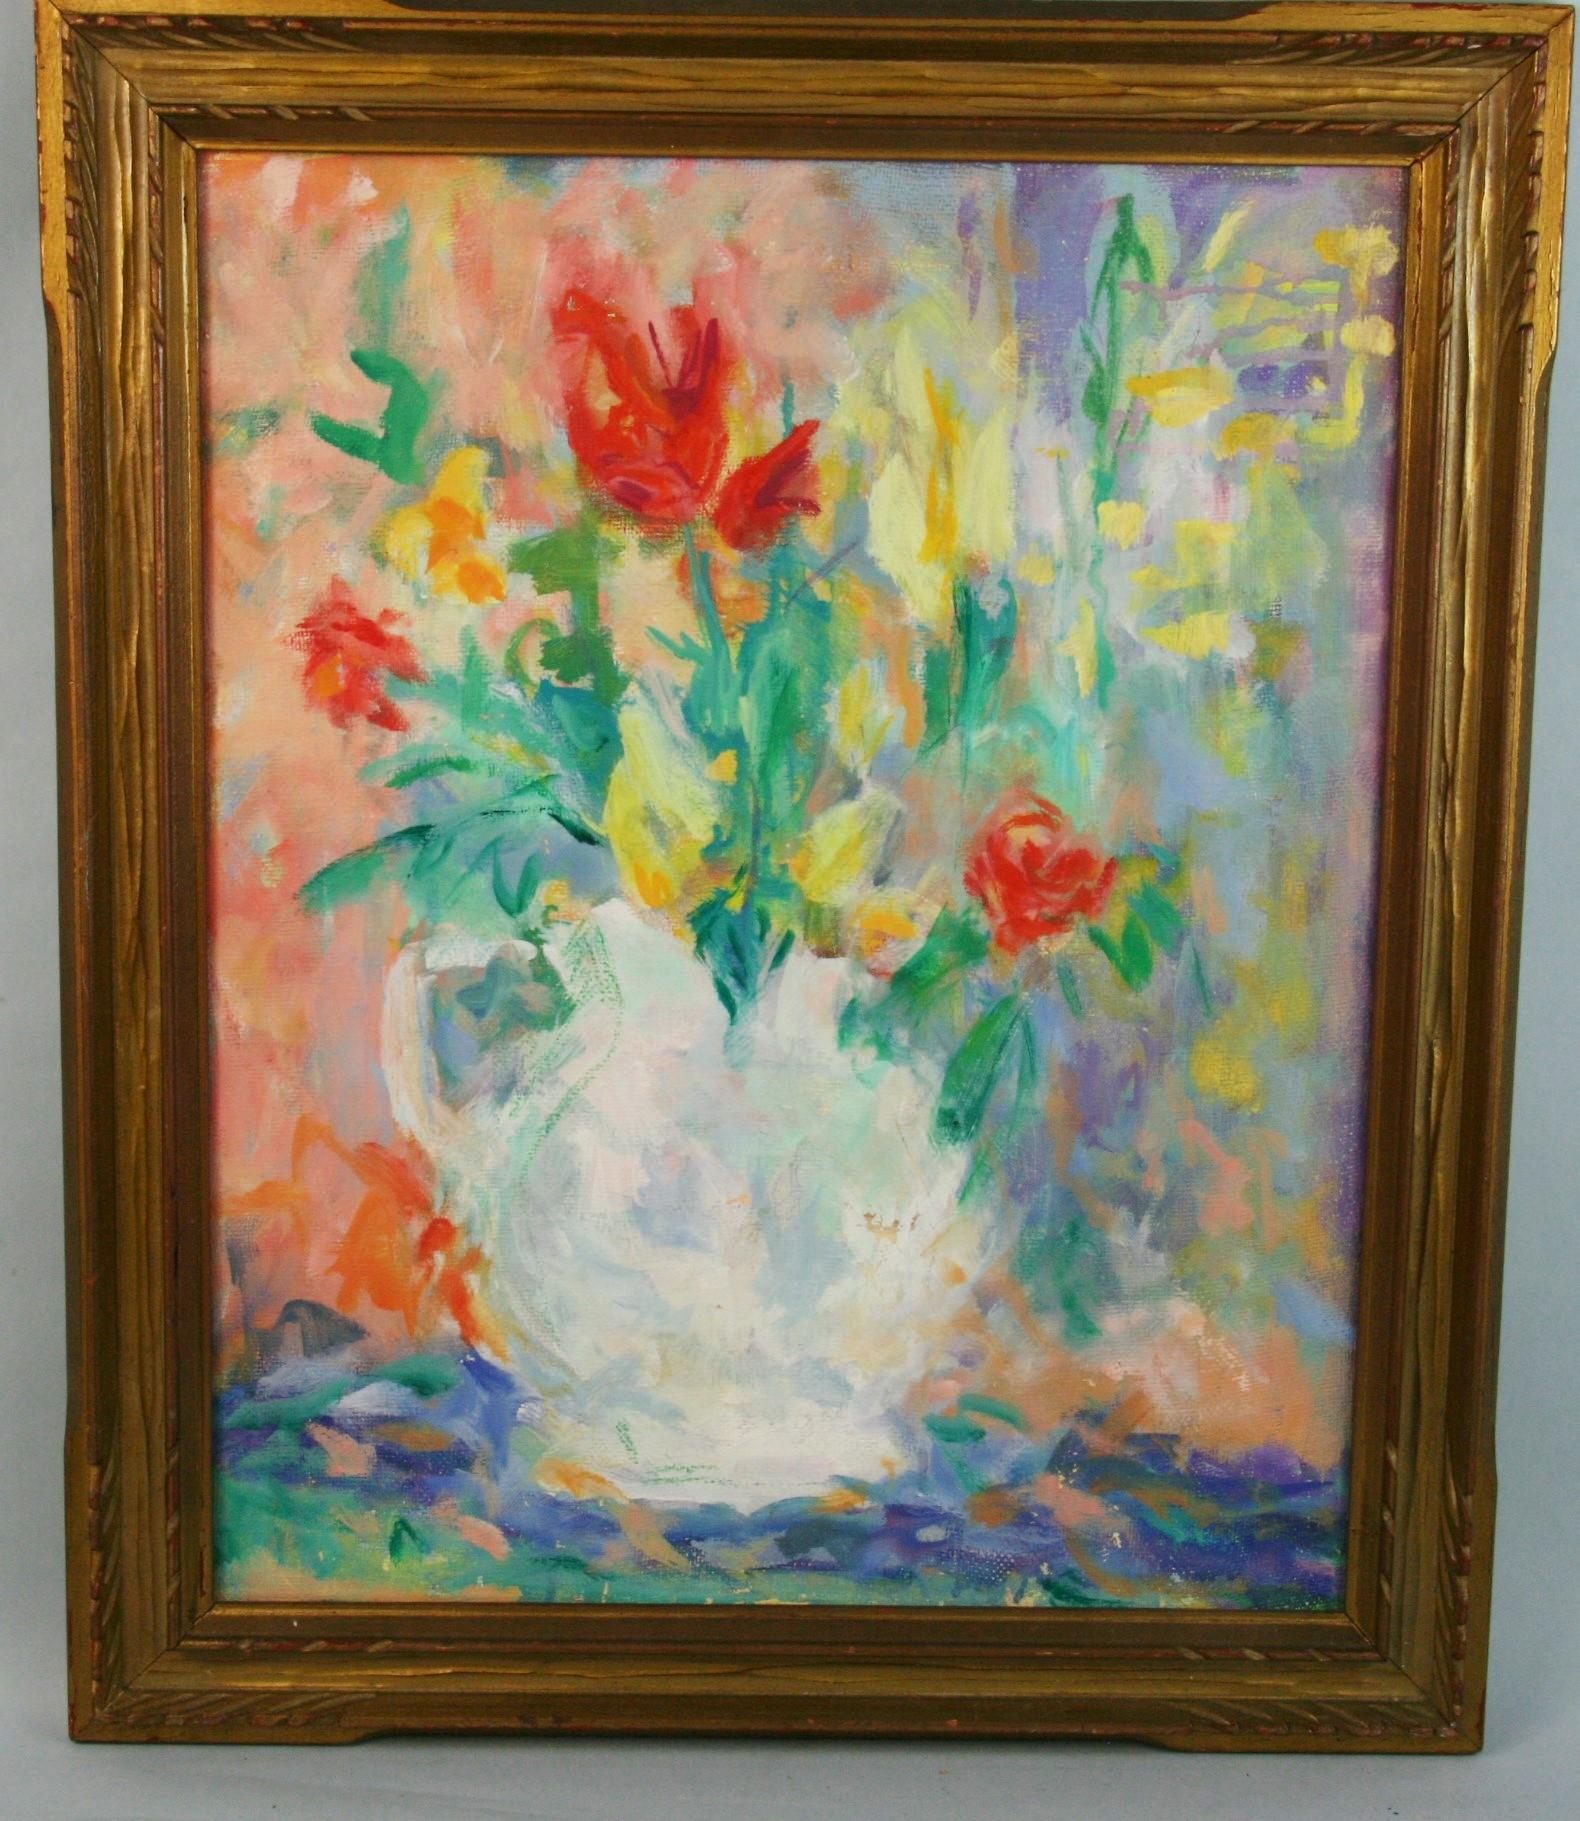 3795 Impressionistische Vase mit Blume
Verso signiert Gelant
In einem geschnitzten Rahmen aus vergoldetem Holz
Bildgröße 19,75 x15,75